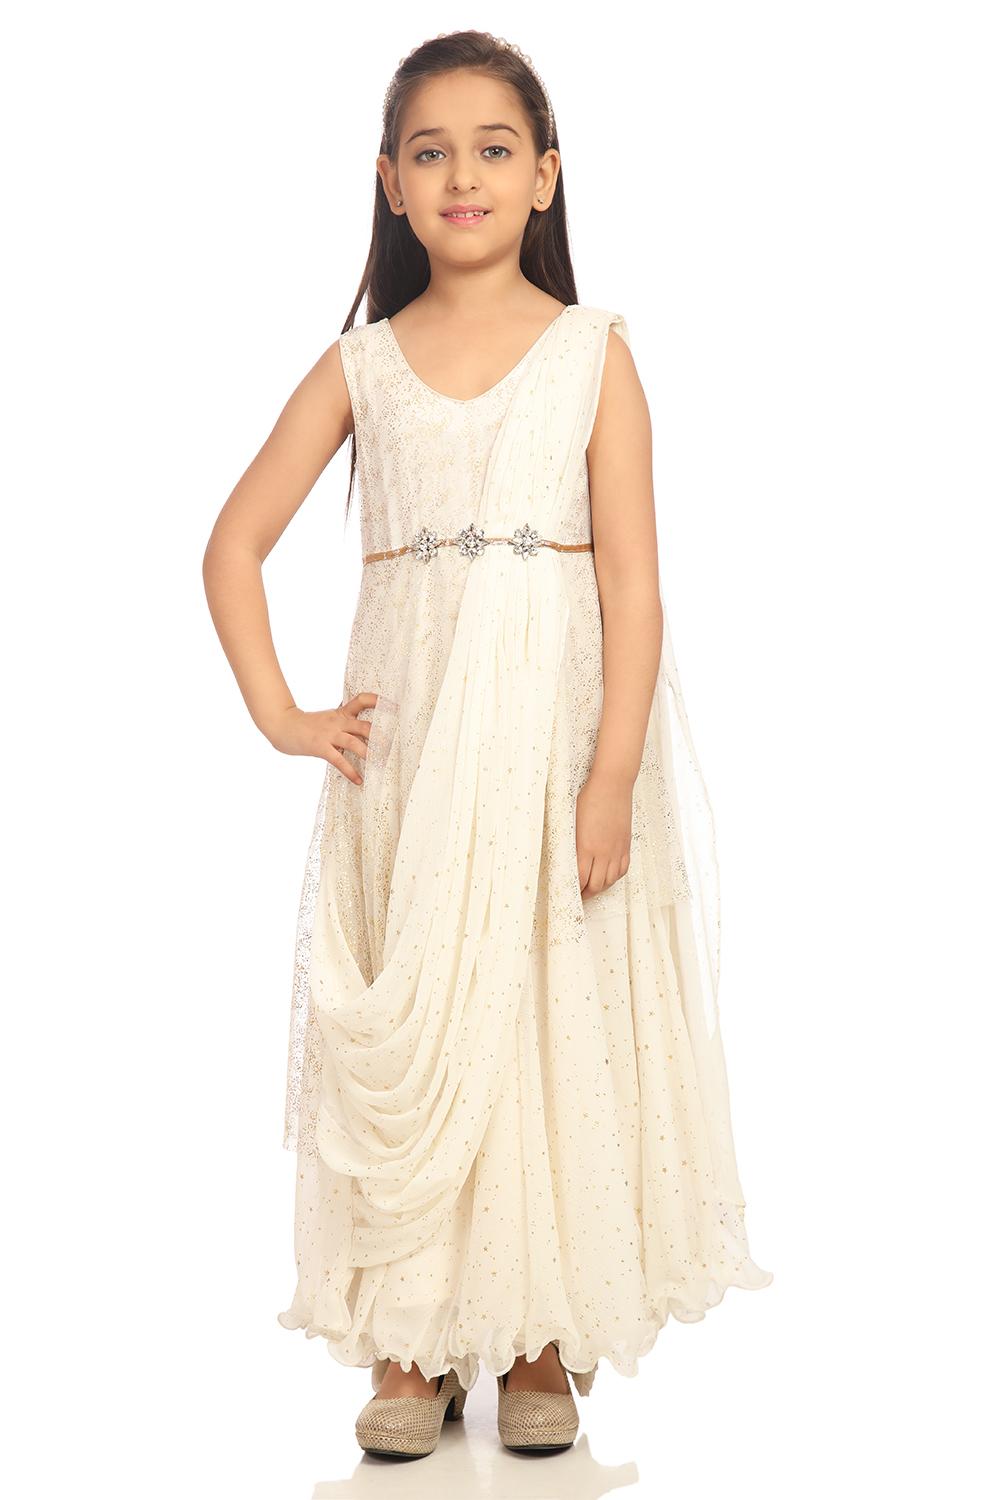 Buy Online Ivory Anarkali Nylon Dress for Women & Girls at Best ...